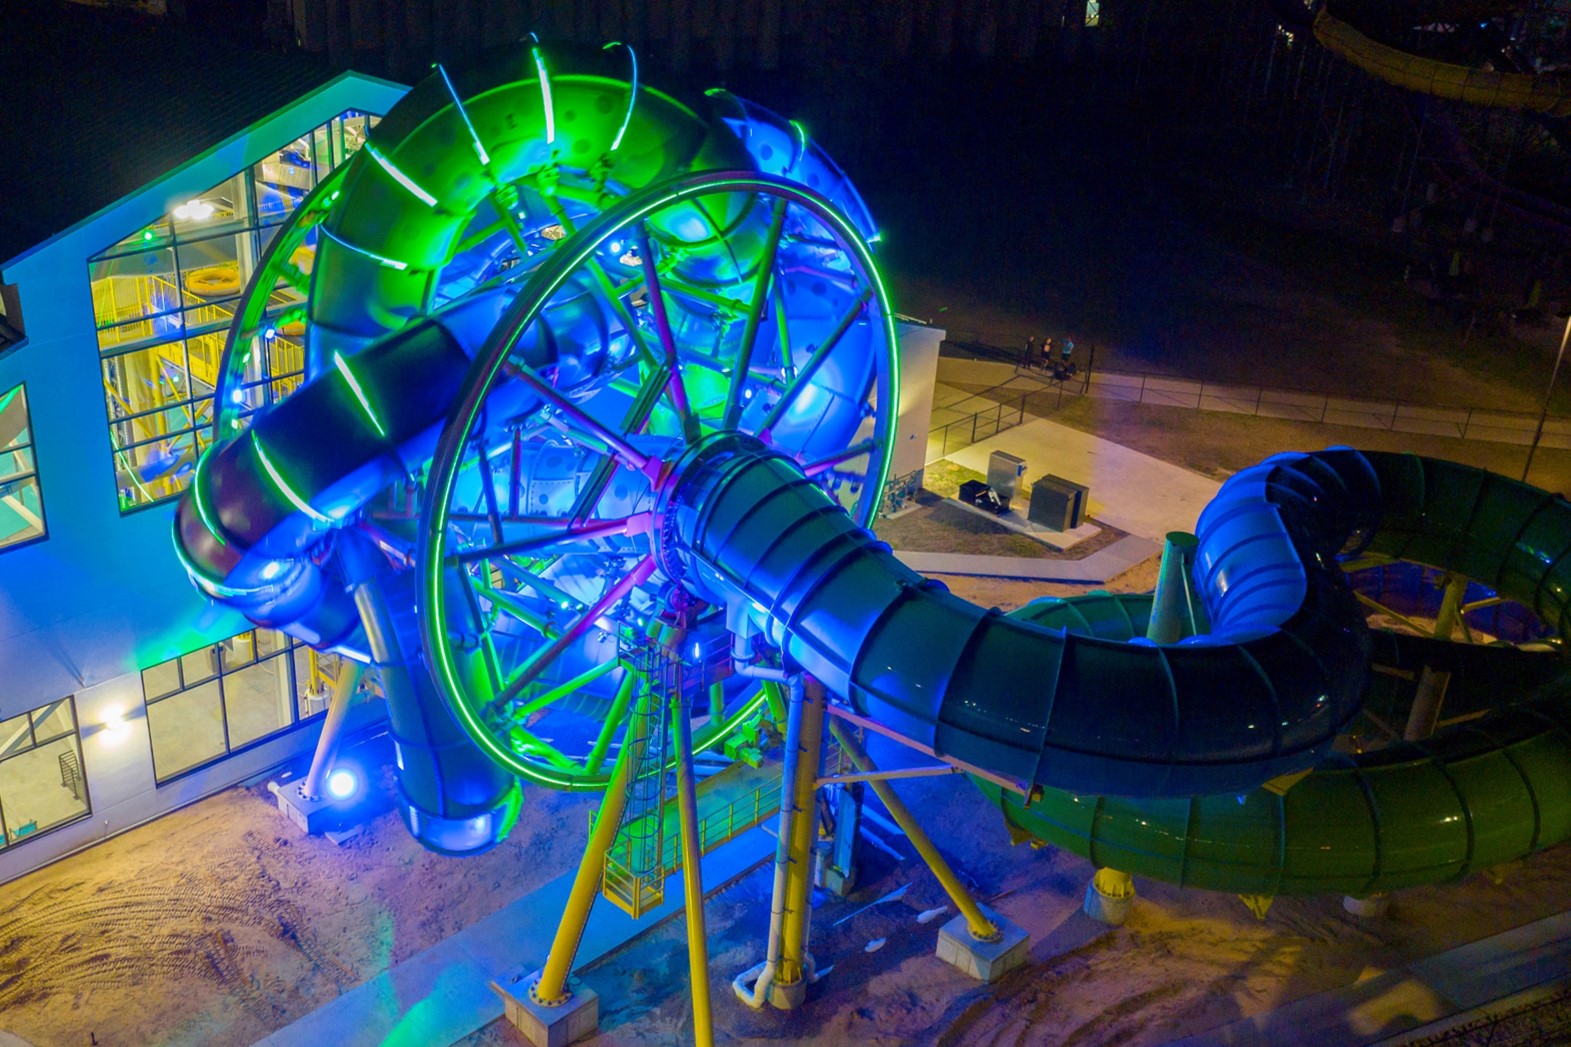 Slidewheel at night in water park